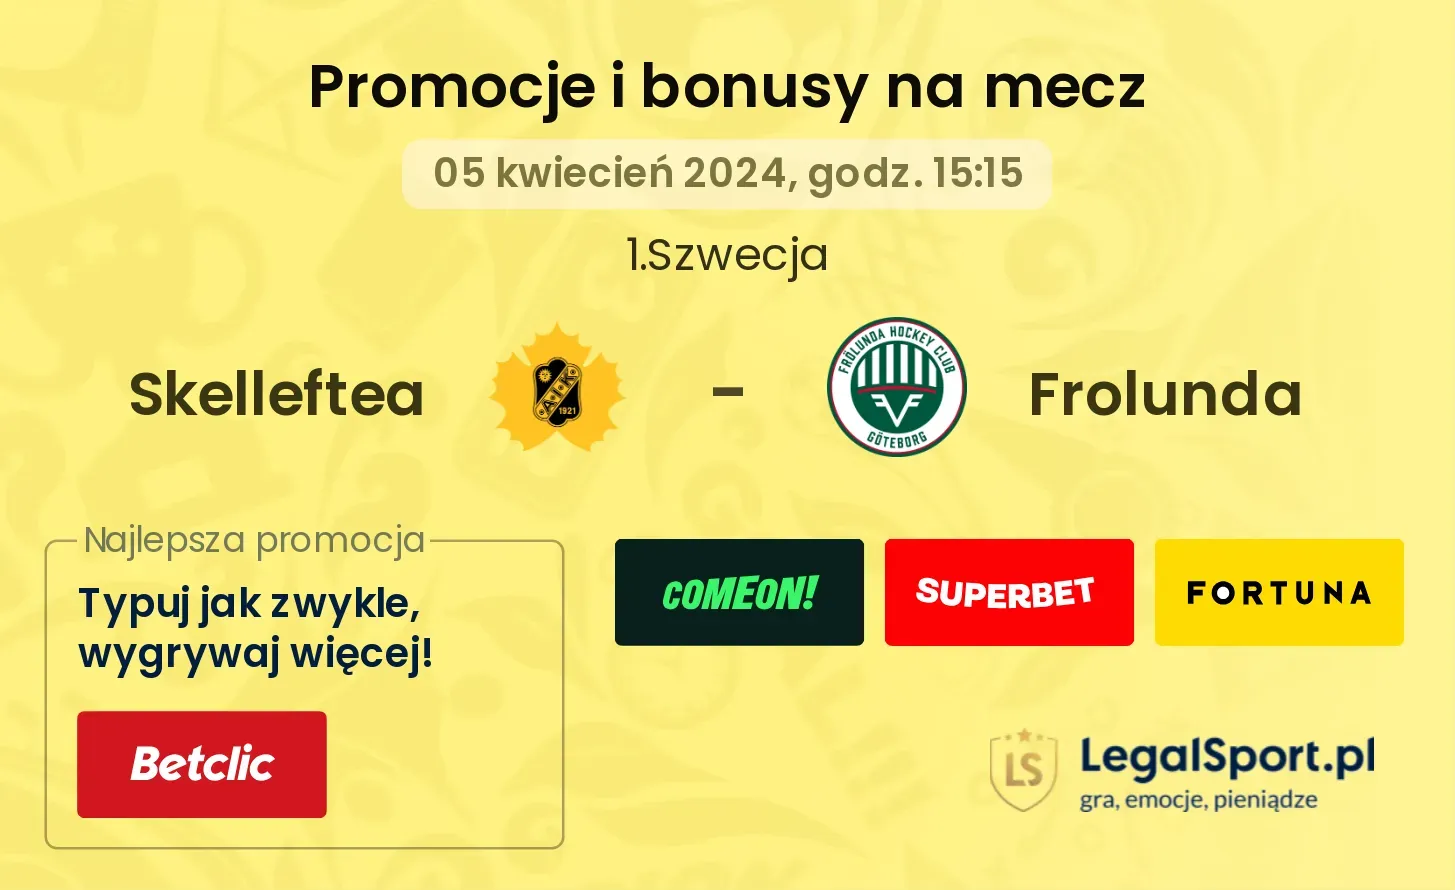 Skelleftea - Frolunda promocje bonusy na mecz